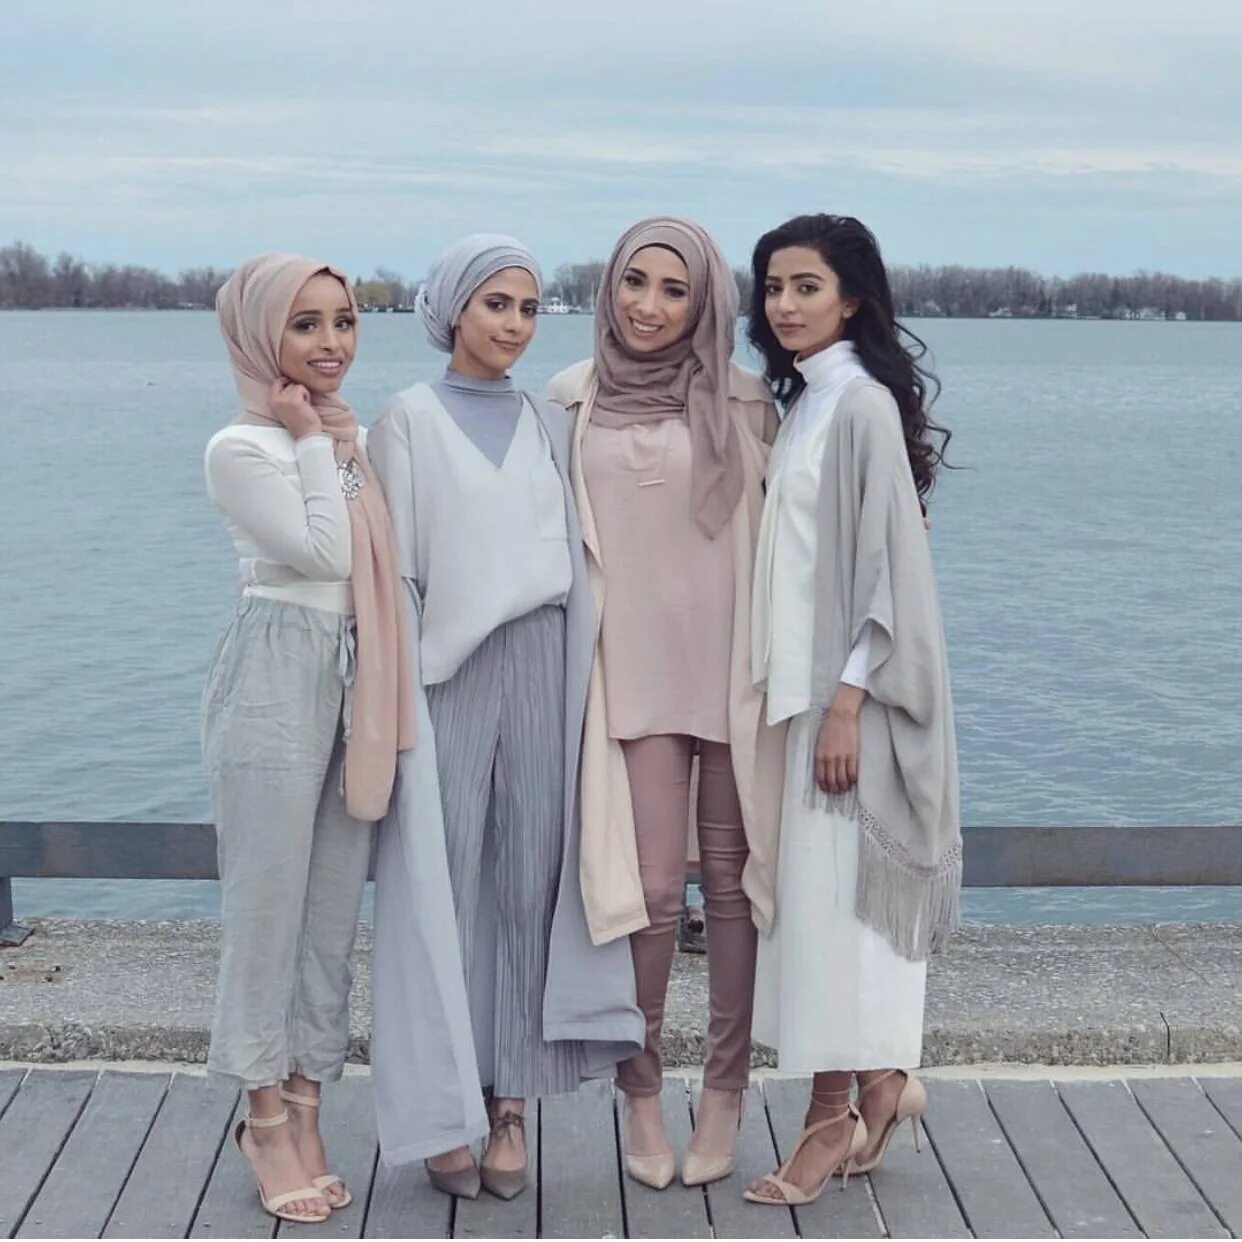 Как ходят мусульмане. Стильная одежда для мусульманок. Мусульманский стиль одежды. Стильные образы для мусульманок. Одежда для мусульманок современная.